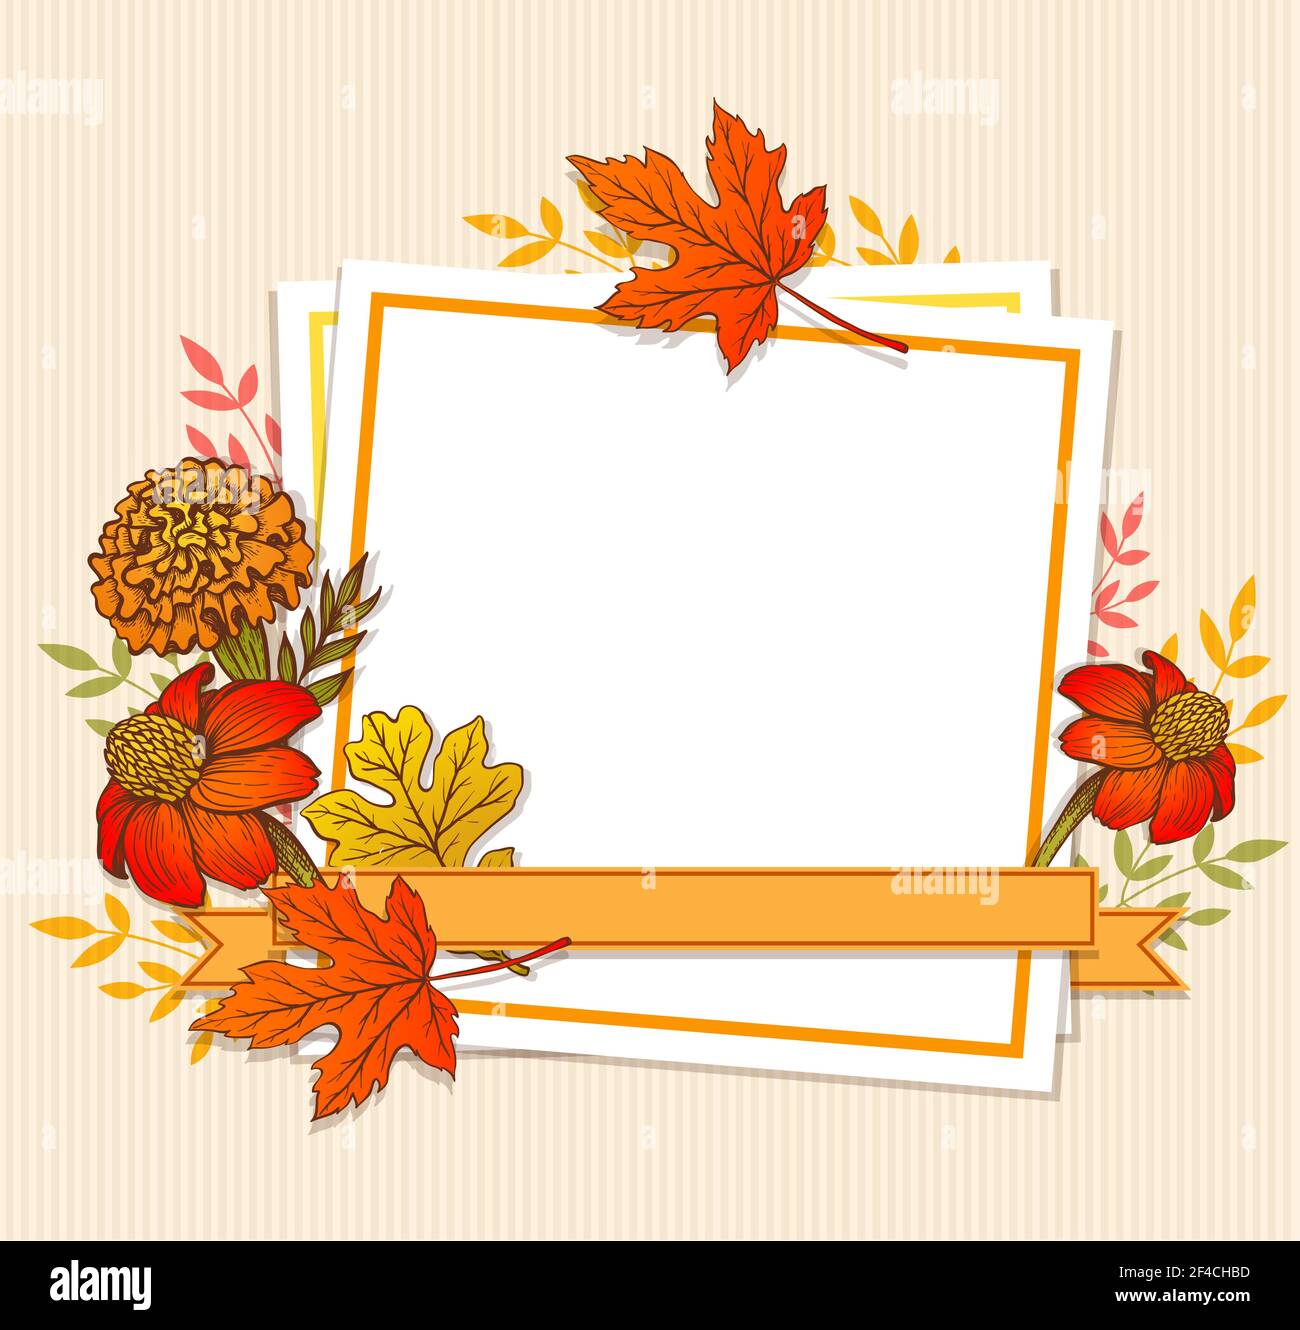 Vecteur d'automne fond orange vintage avec feuilles d'érable, fleurs et feuille de papier blanc. Floral frame pour l'automne saison vente. Illustration de Vecteur